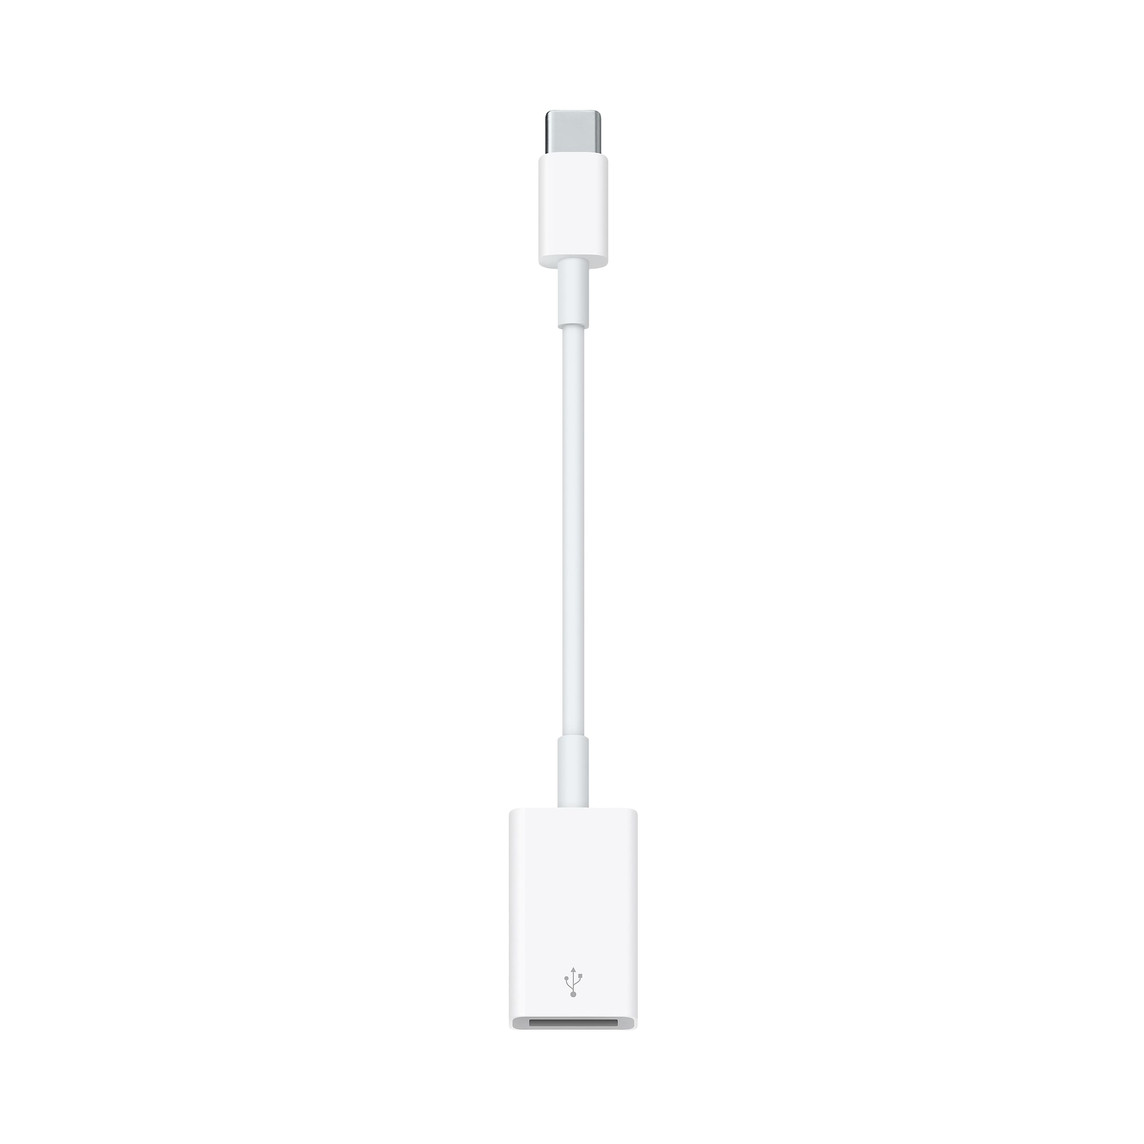 Con l’adattatore da USB‑C a USB puoi collegare il tuo Mac con porte USB‑C o Thunderbolt 3 (USB‑C) ai dispositivi iOS e alle periferiche USB standard.